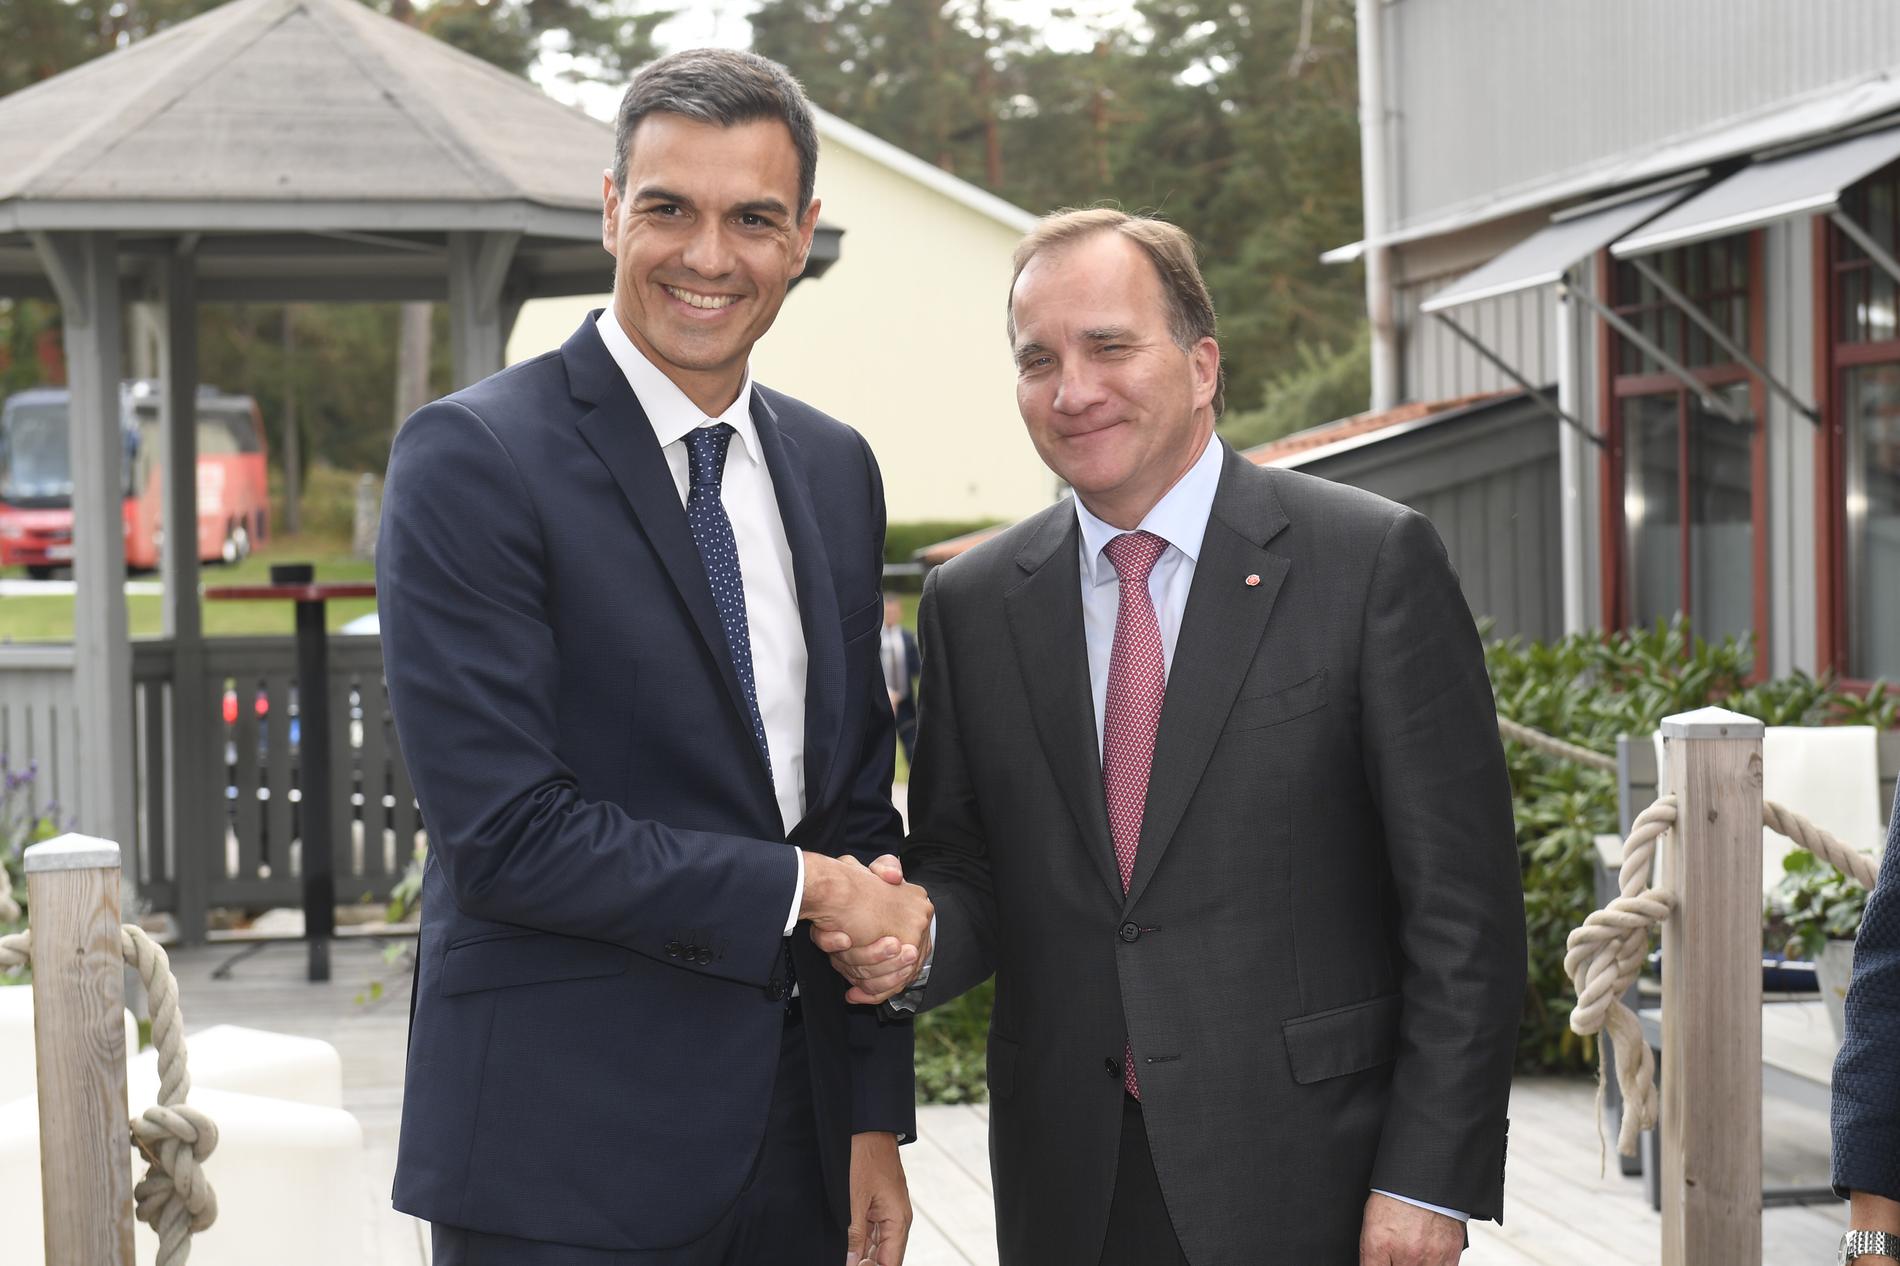 Statsminister Stefan Löfven (S) träffar på mötet bland annat Spaniens premiärminister Pedro Sánchez, som löper stor risk att förlora regeringsmakten i Madrid i ett nyval den 28 april. Arkivbild.